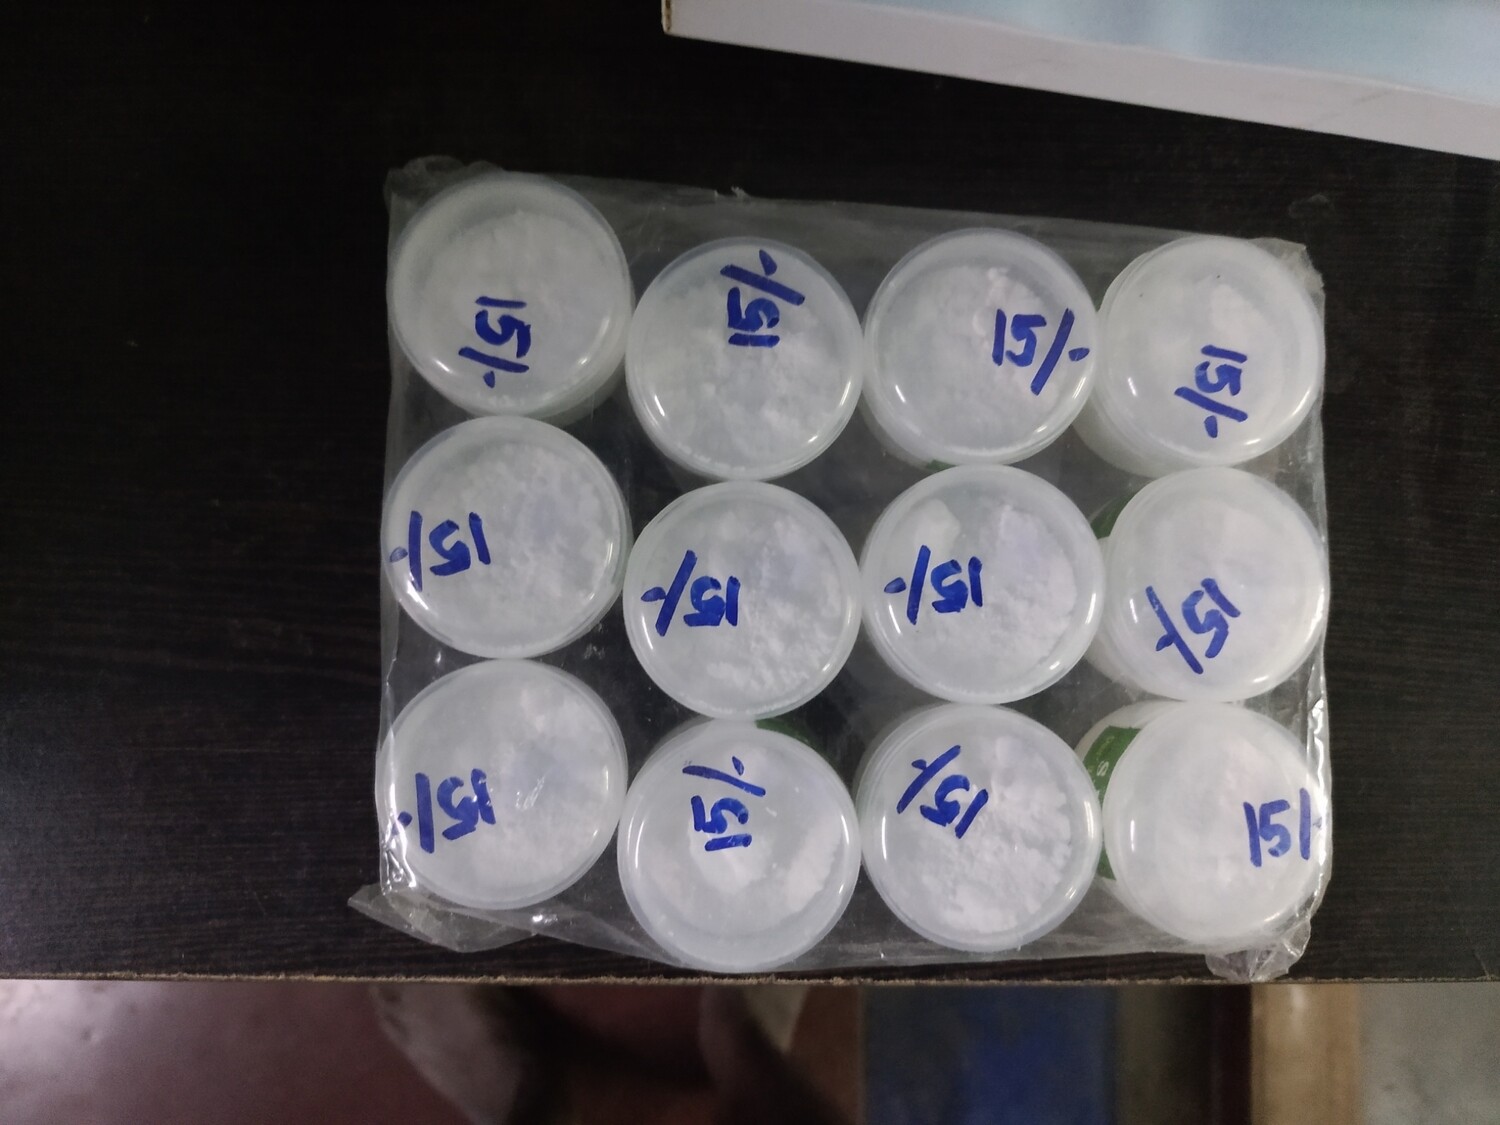 Thirumann powder,pack of 12; திருமண் பவுடர் / தூள் 12 சிறிய டப்பாக்கள்